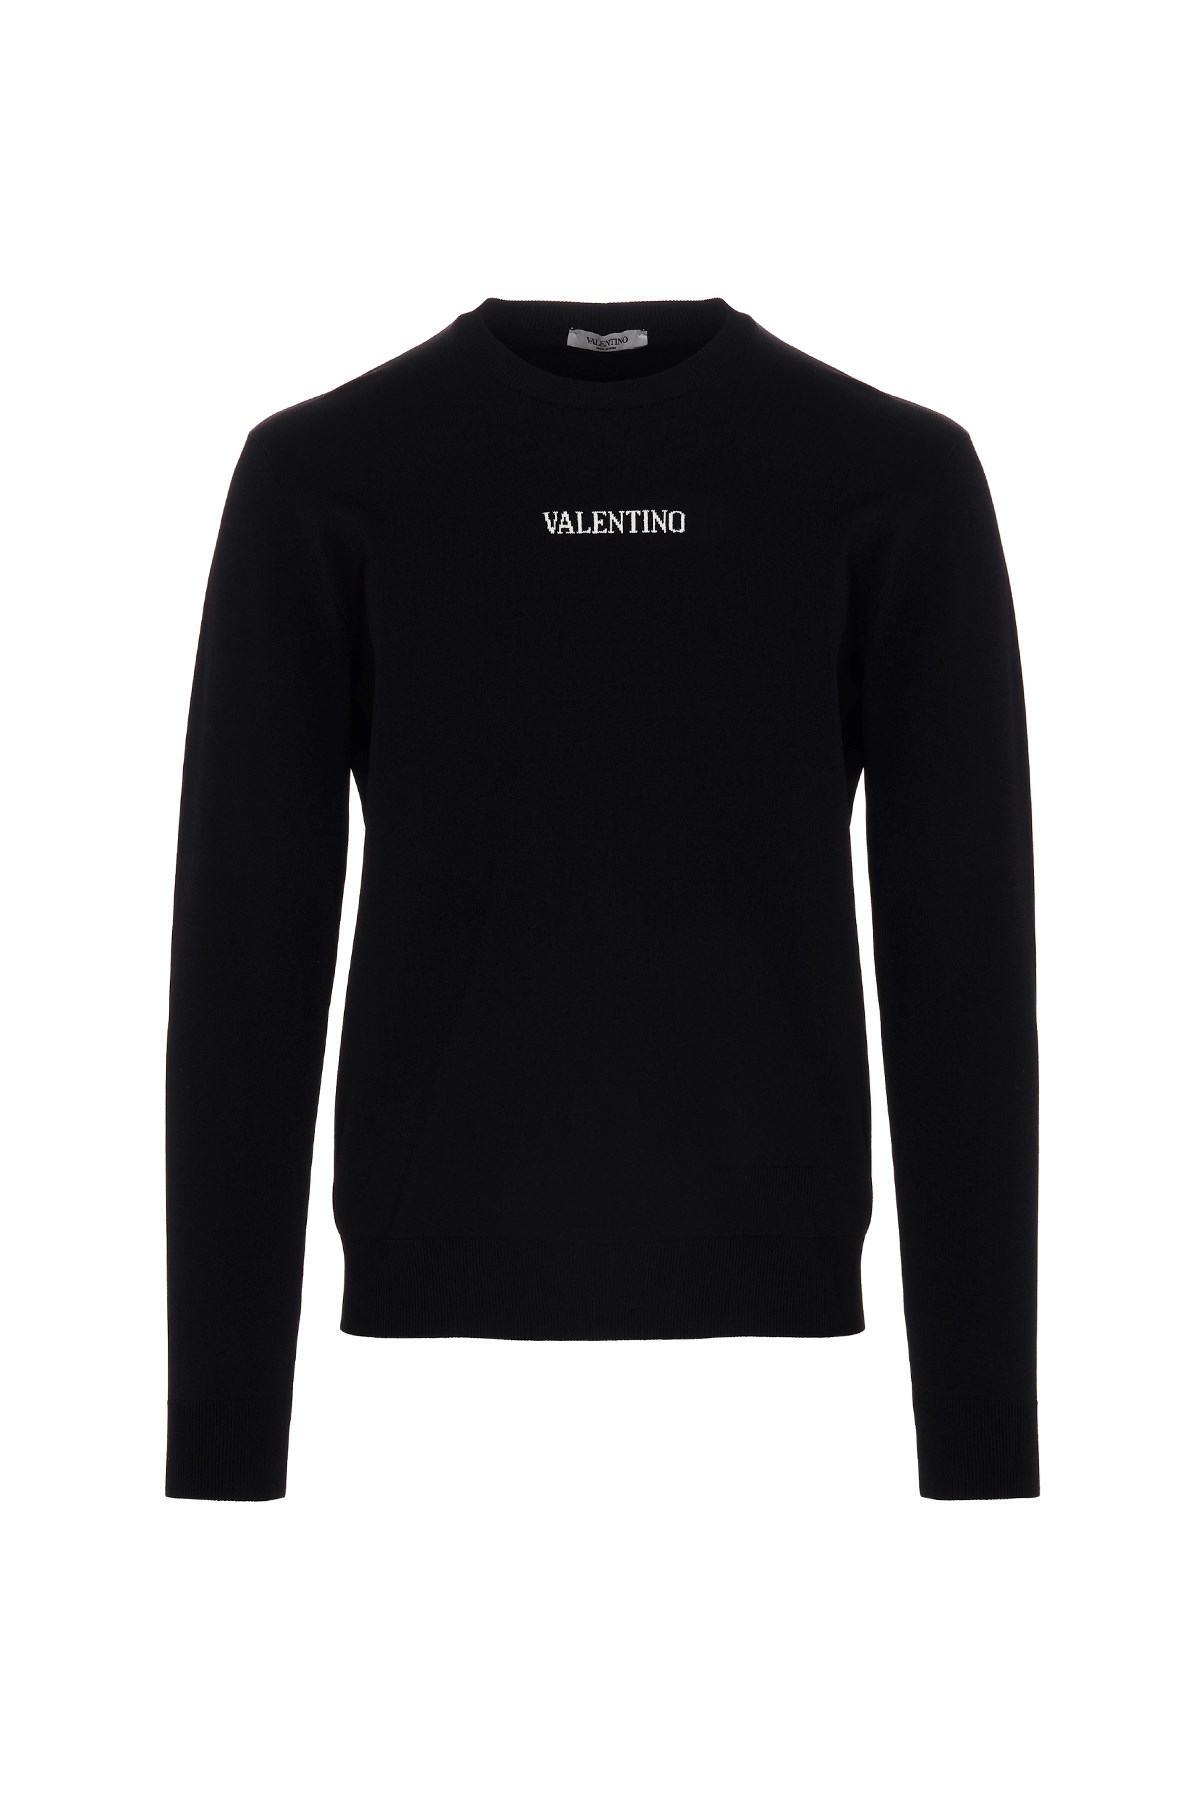 VALENTINO Pullover Mit Intarsien-Logo